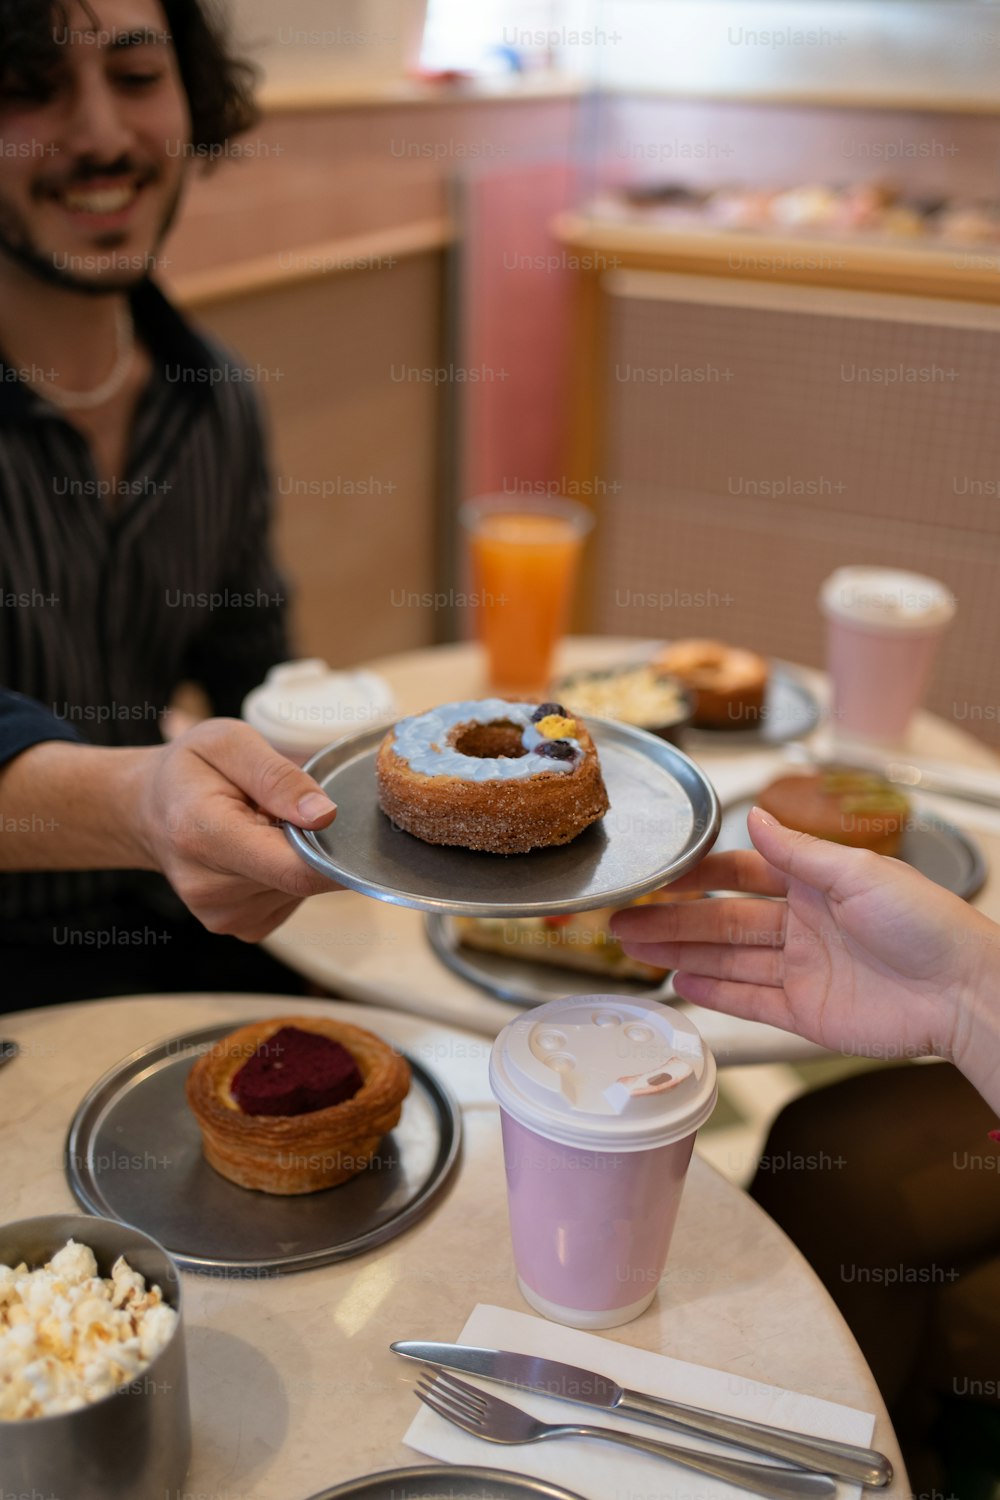 une personne tenant une assiette avec un dessert dessus